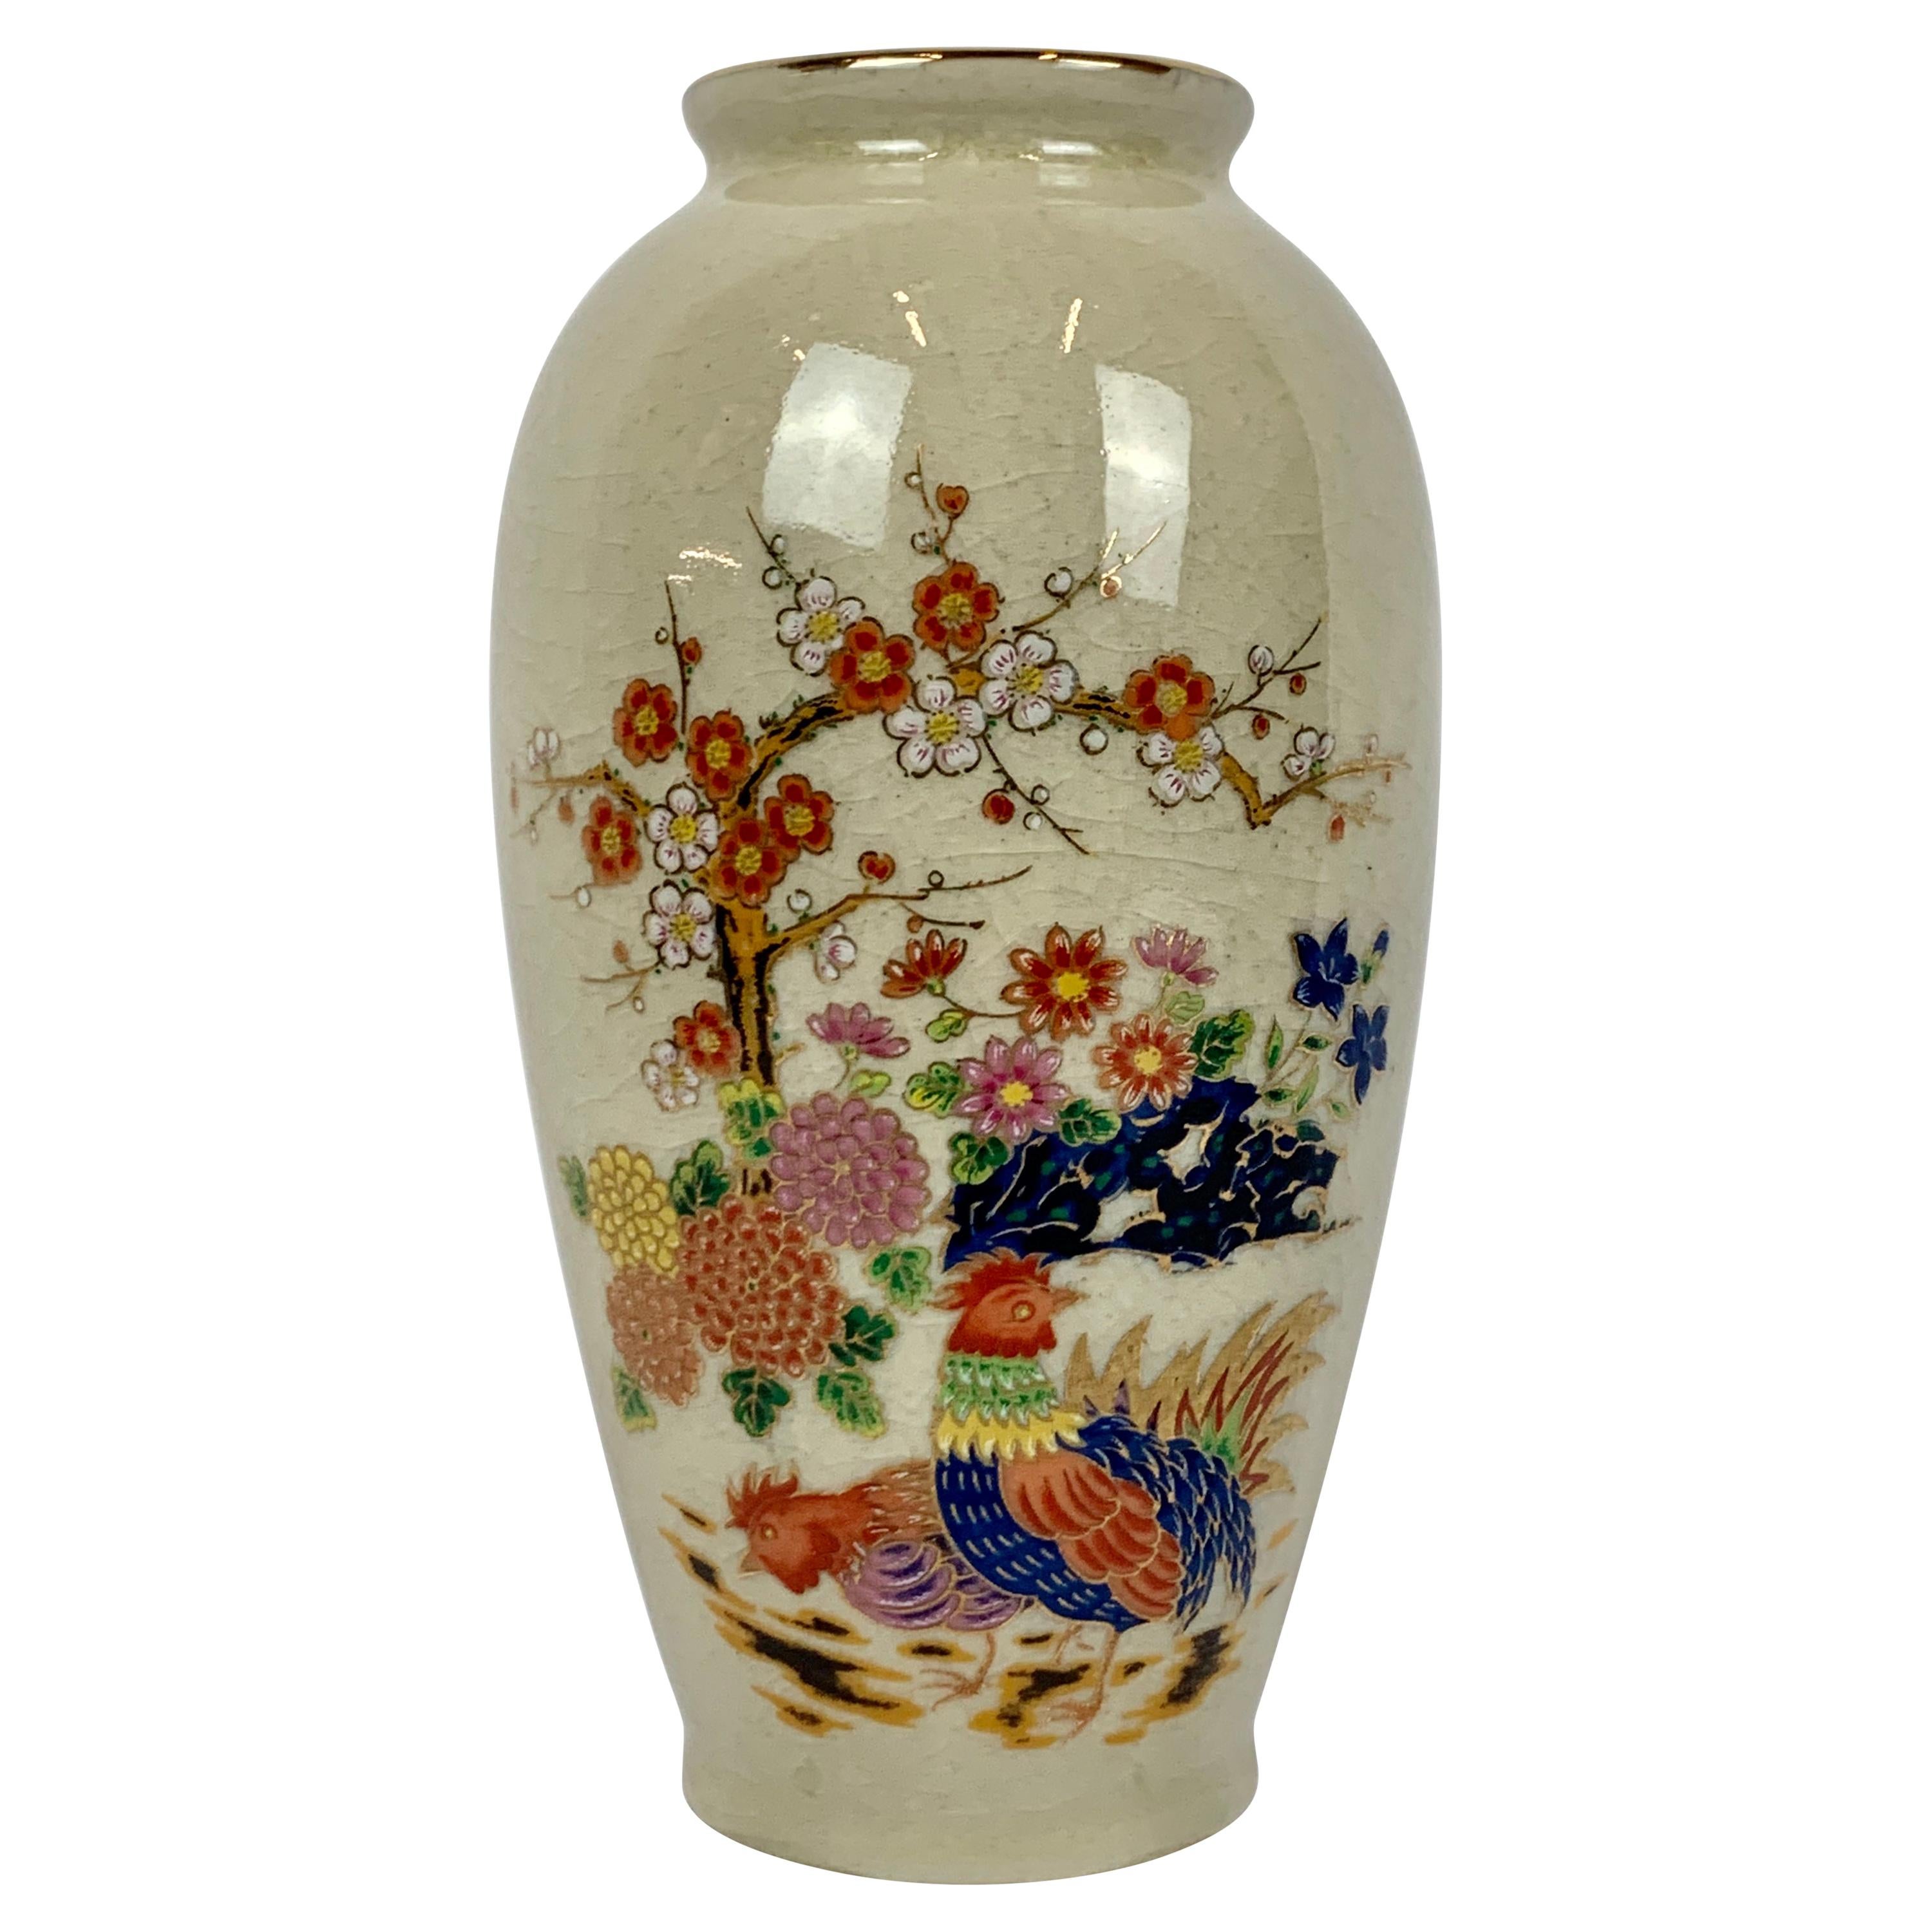  Vase japonais en porcelaine avec délicate gerbe de fleurs peintes à la main